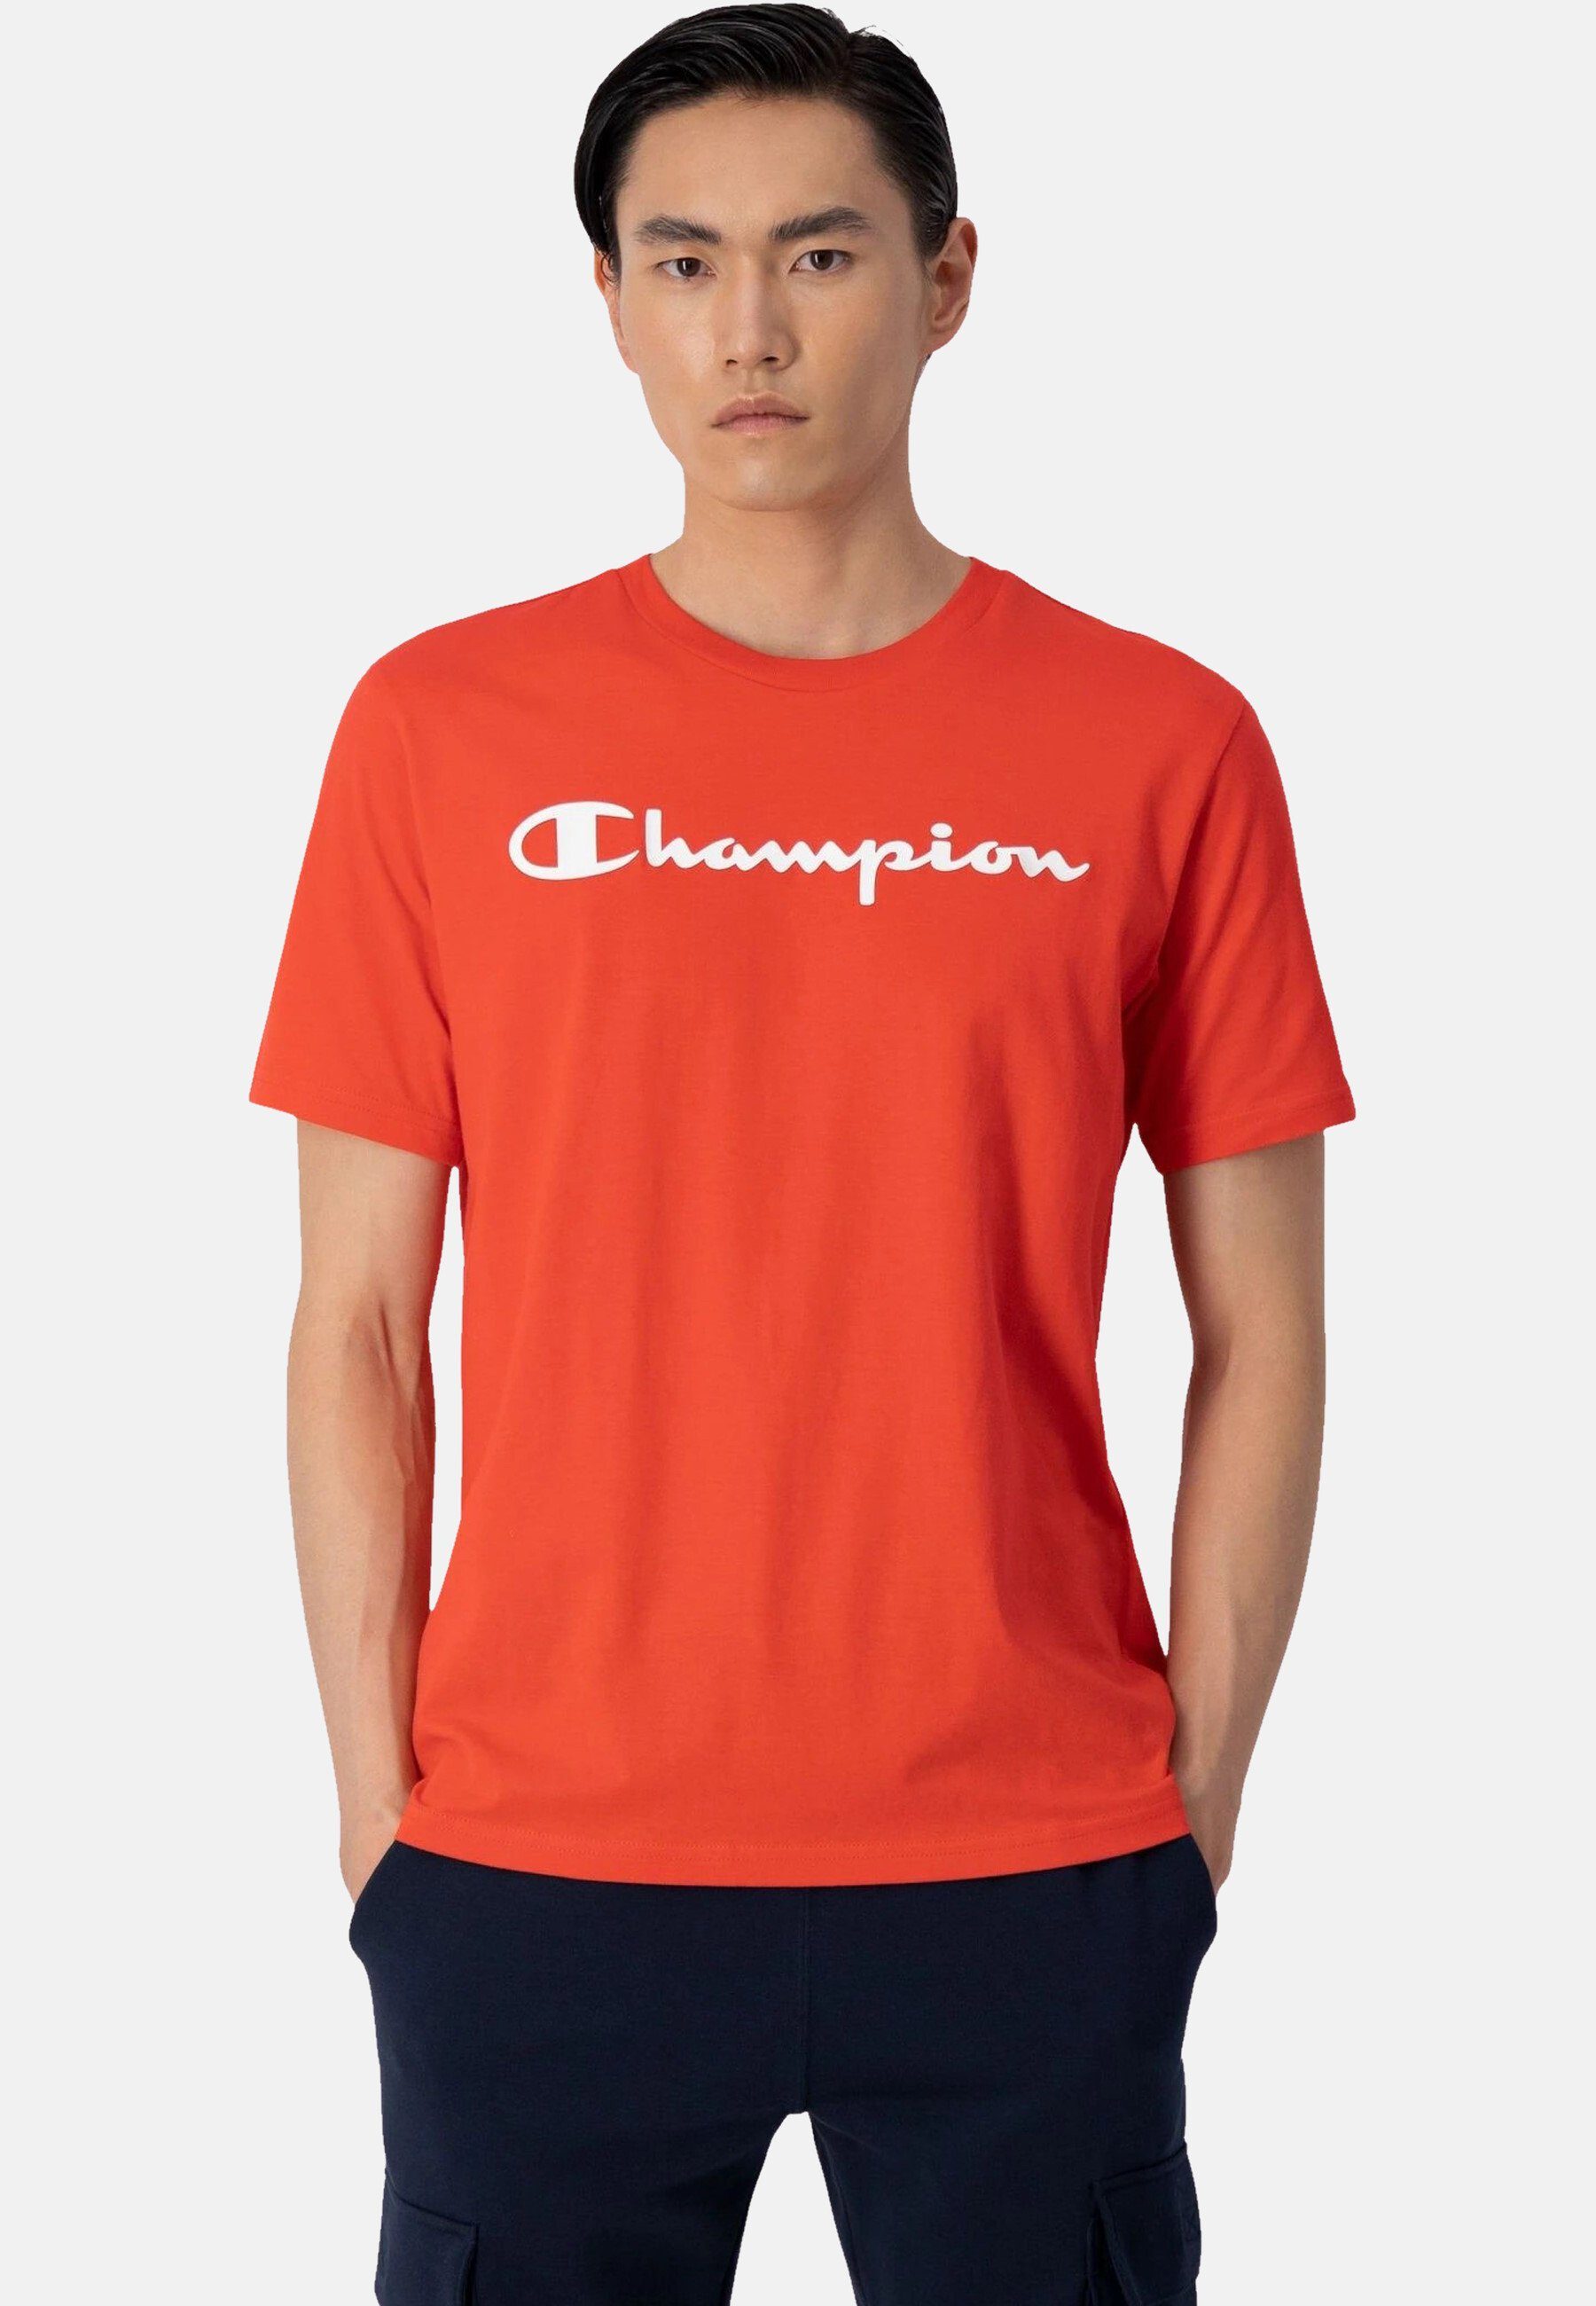 Champion T-Shirt Shirt rot Rundhals-T-Shirt mit Baumwolle aus